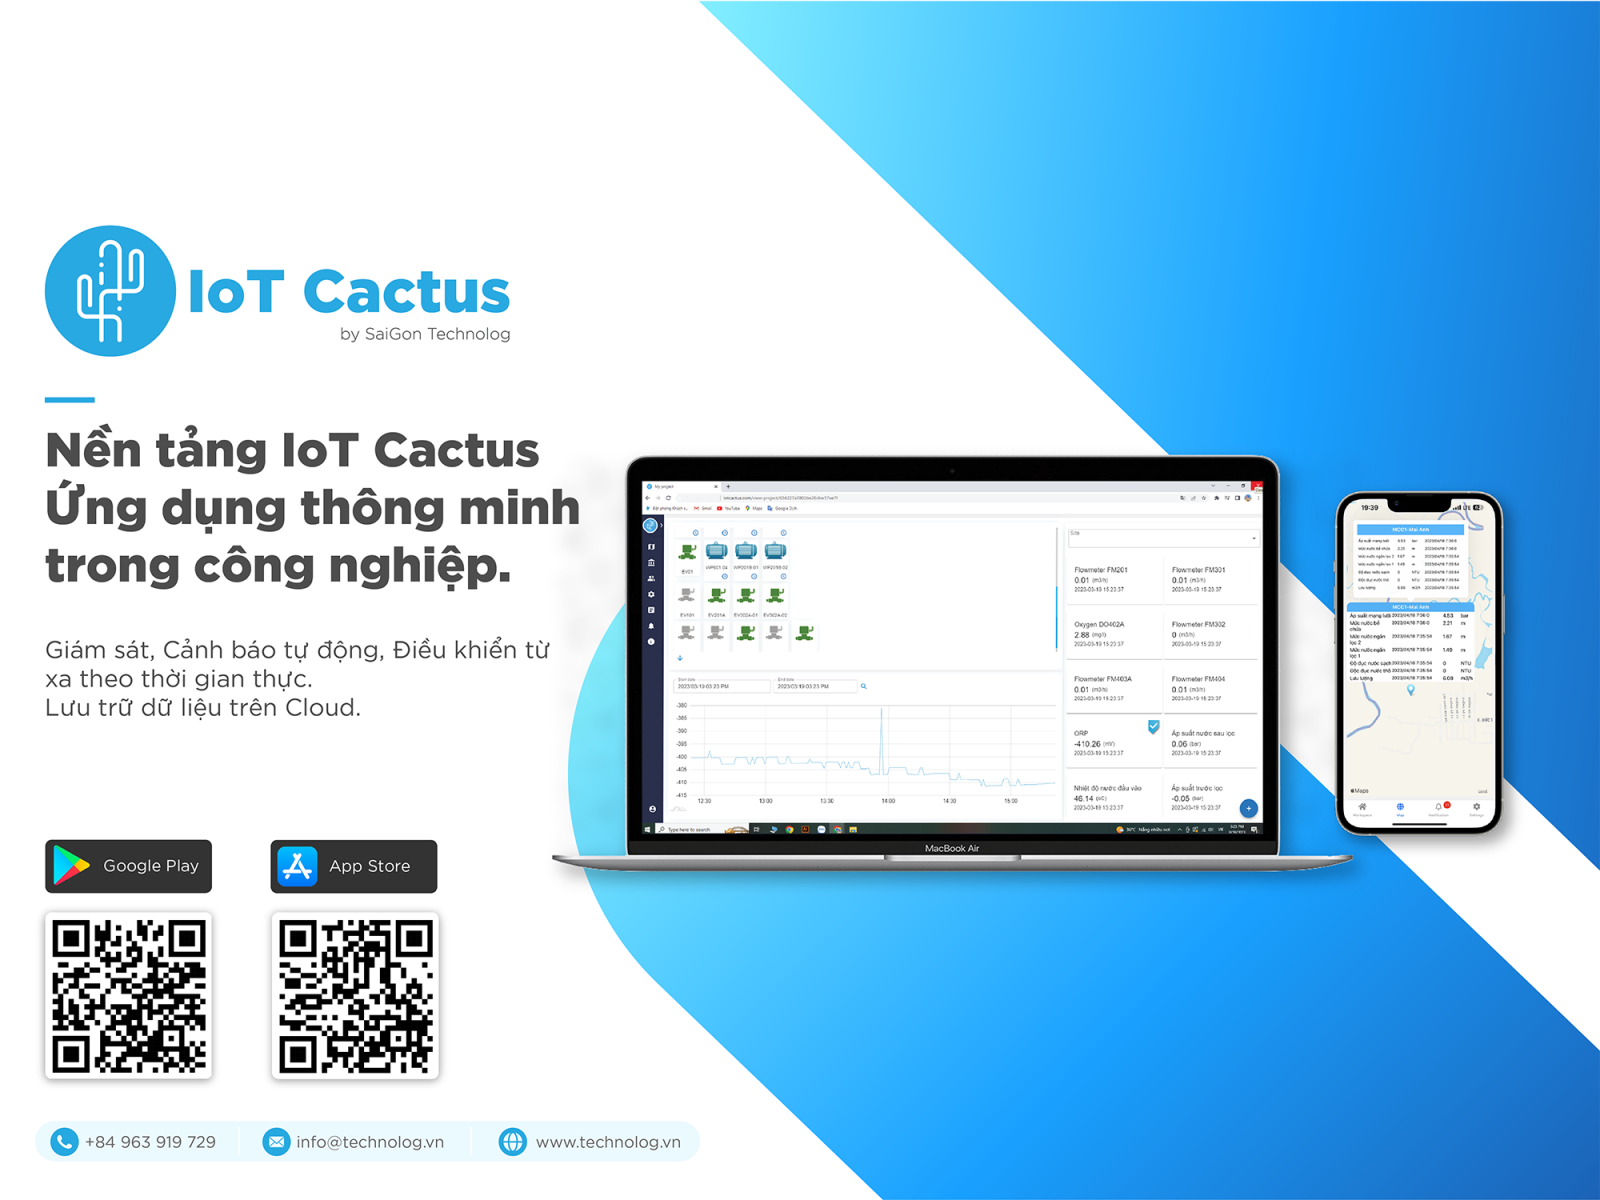 Nền tảng IoT Cactus